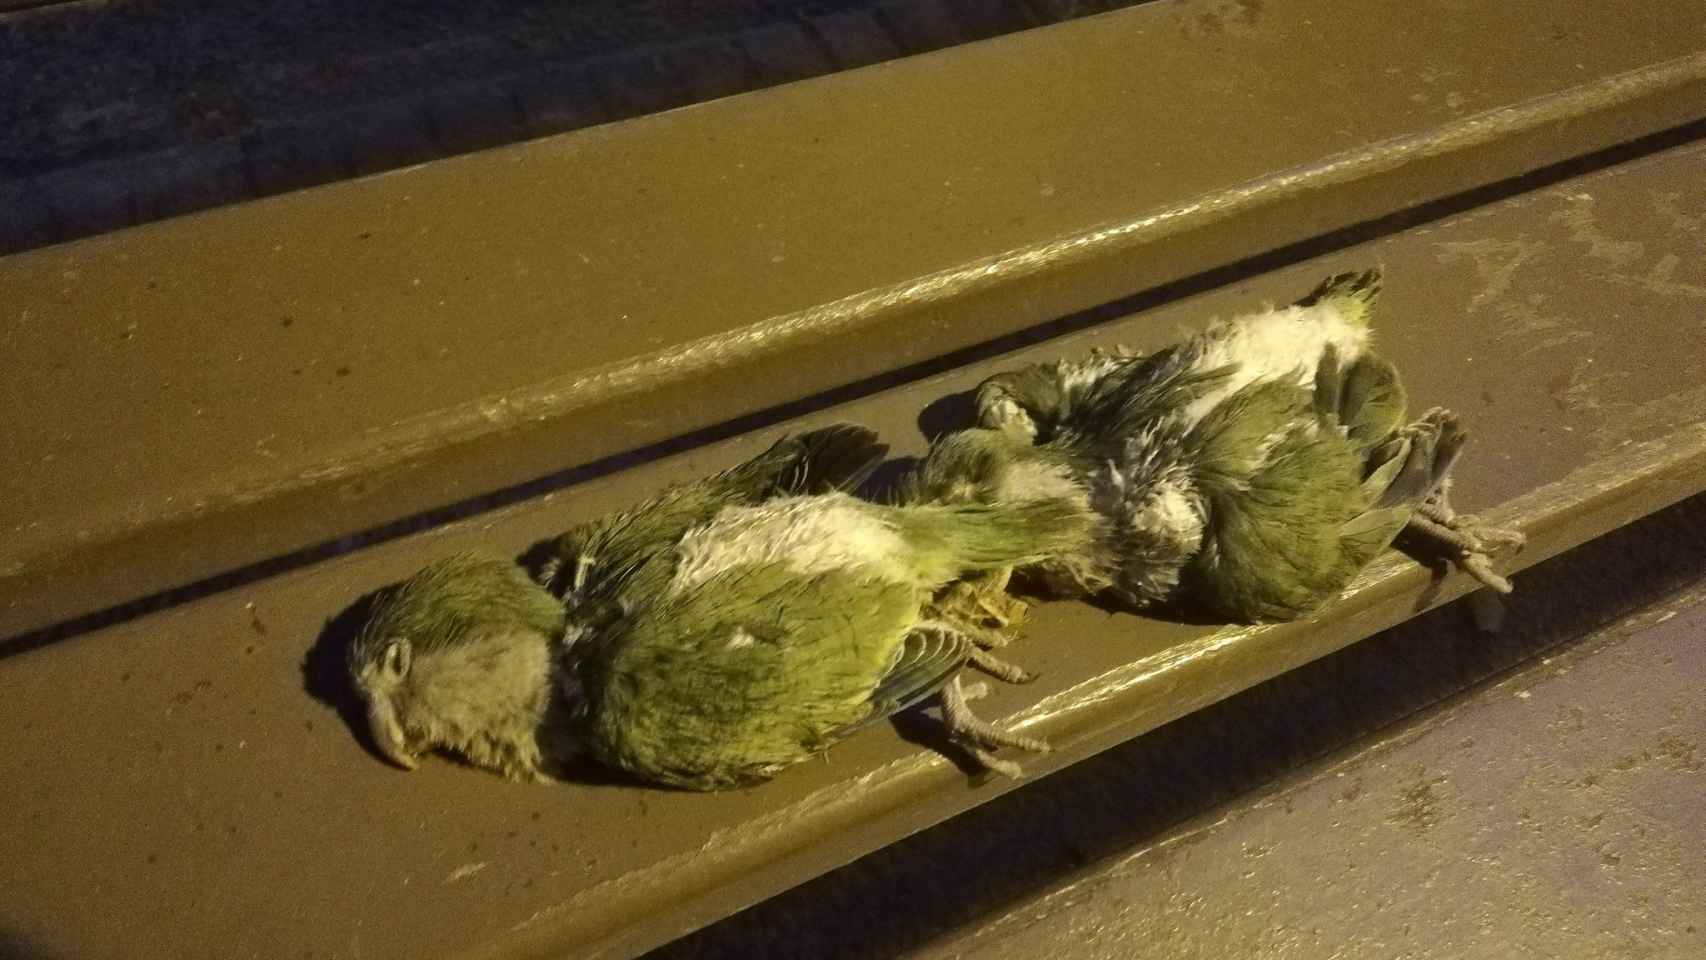 Dos de los pollitos de cotorra muertos, sobre un banco de la plaza Nadal / CORAZÓN DE PALOMA